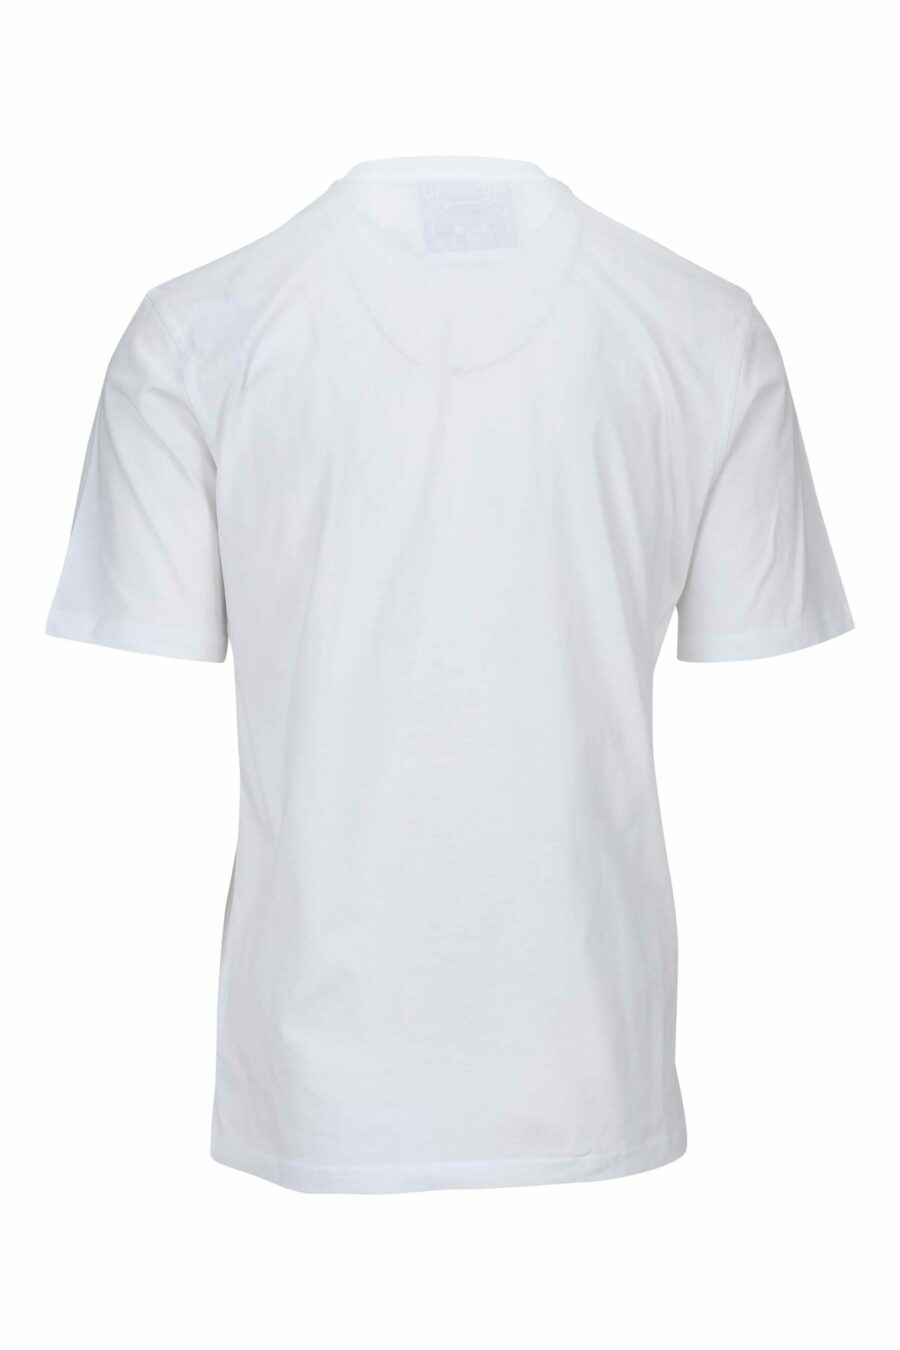 Camiseta blanca con maxilogo oso en puntos monocromático - 667113455617 1 scaled